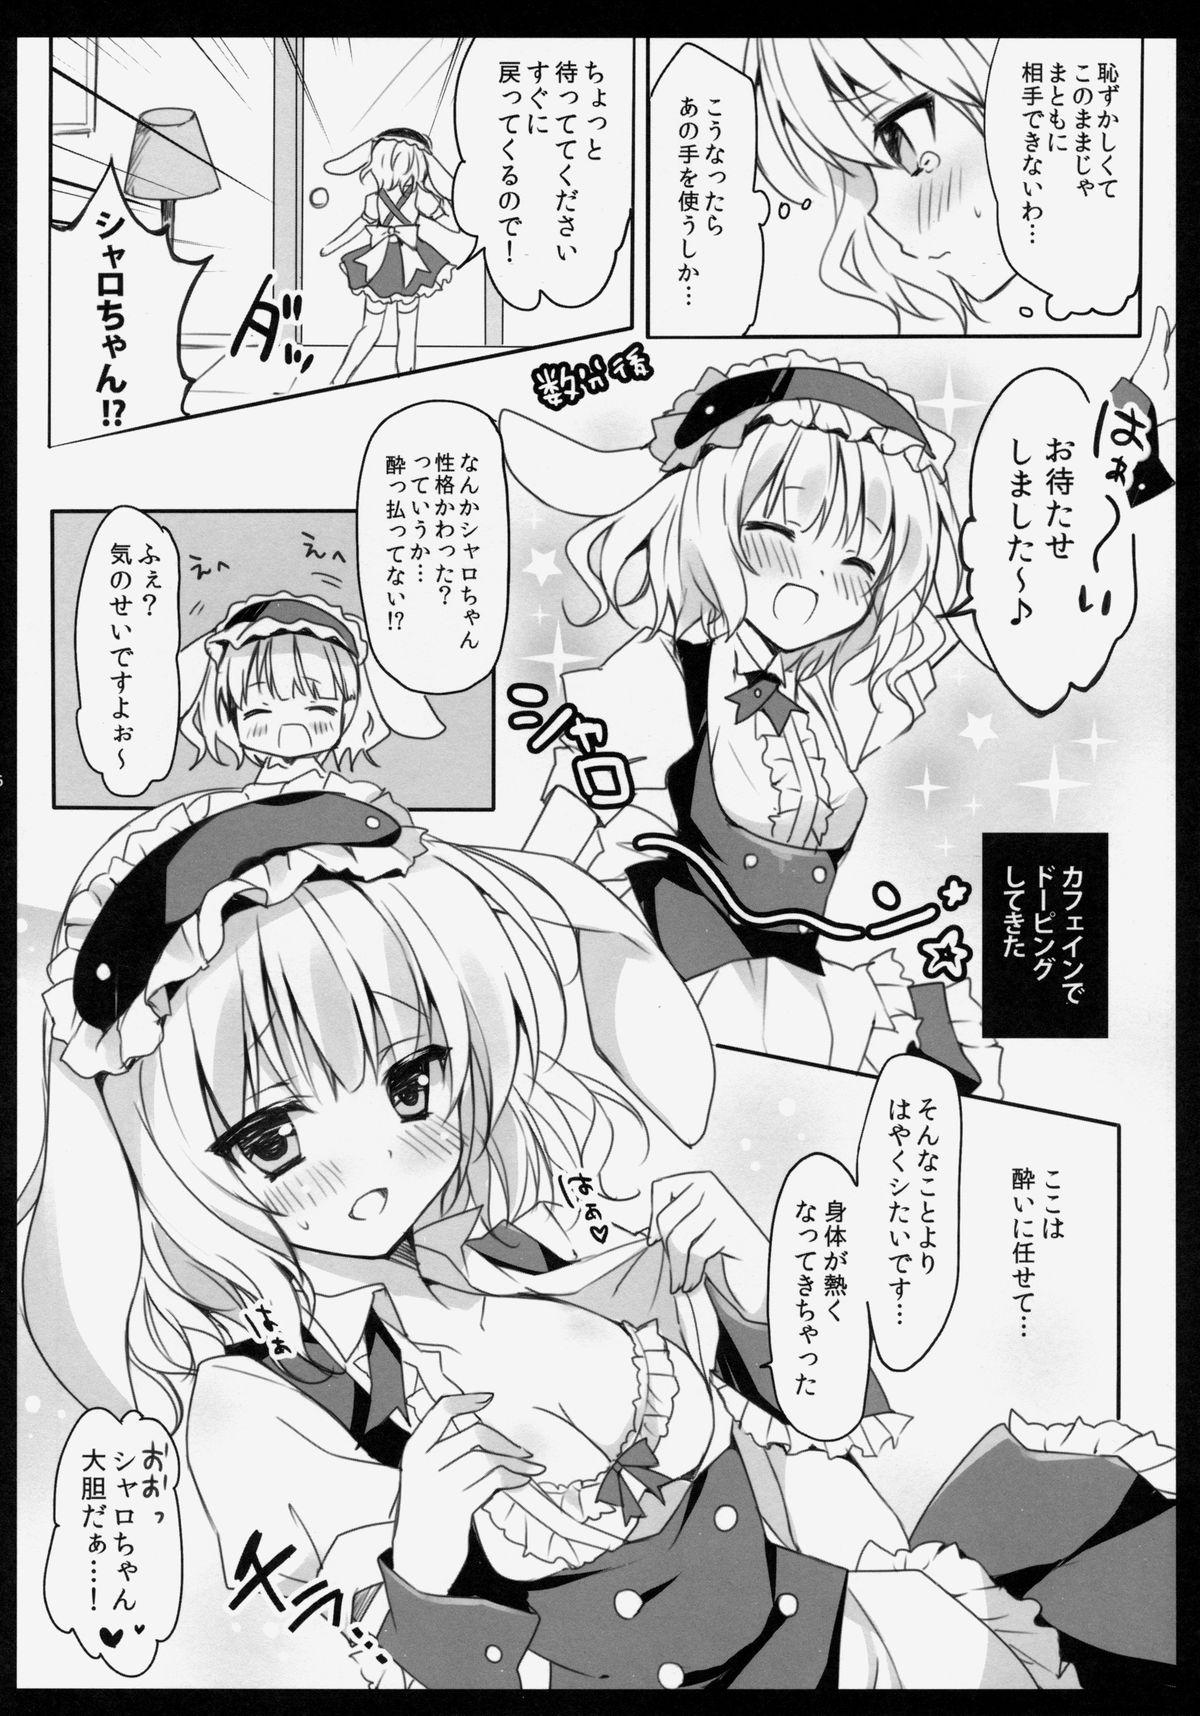 Sextape Gochuumon wa Sharo-chan desu ka? - Gochuumon wa usagi desu ka Nude - Page 5